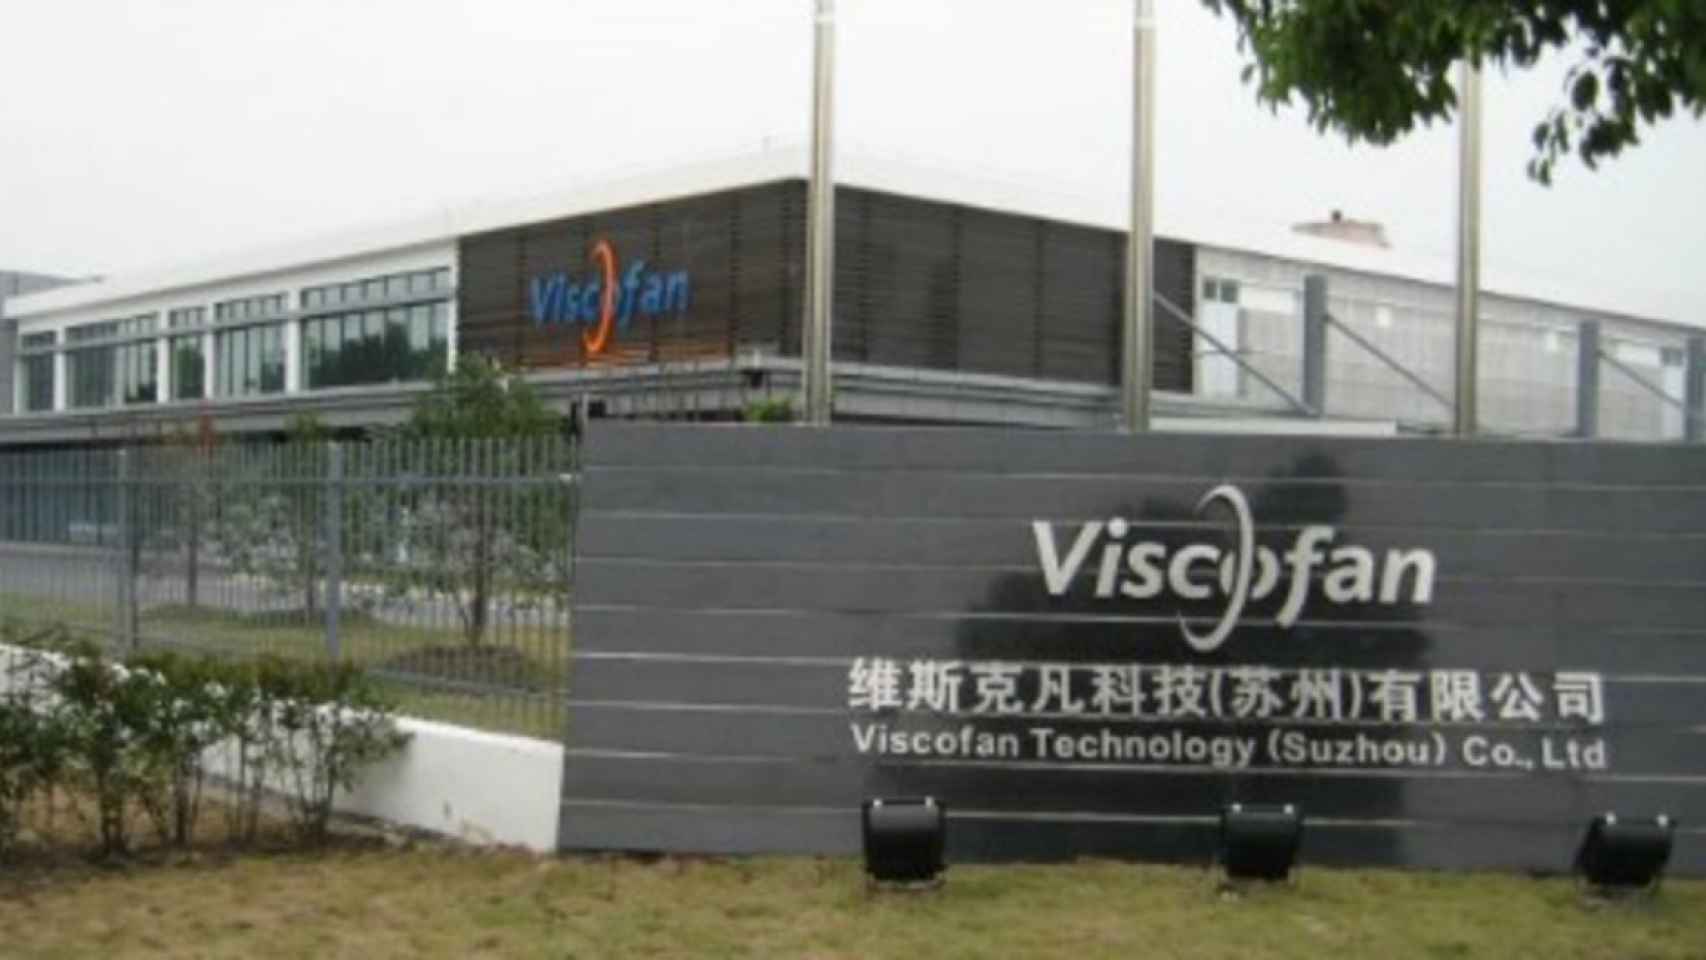 Entrada a una de las fábricas de Viscofan.